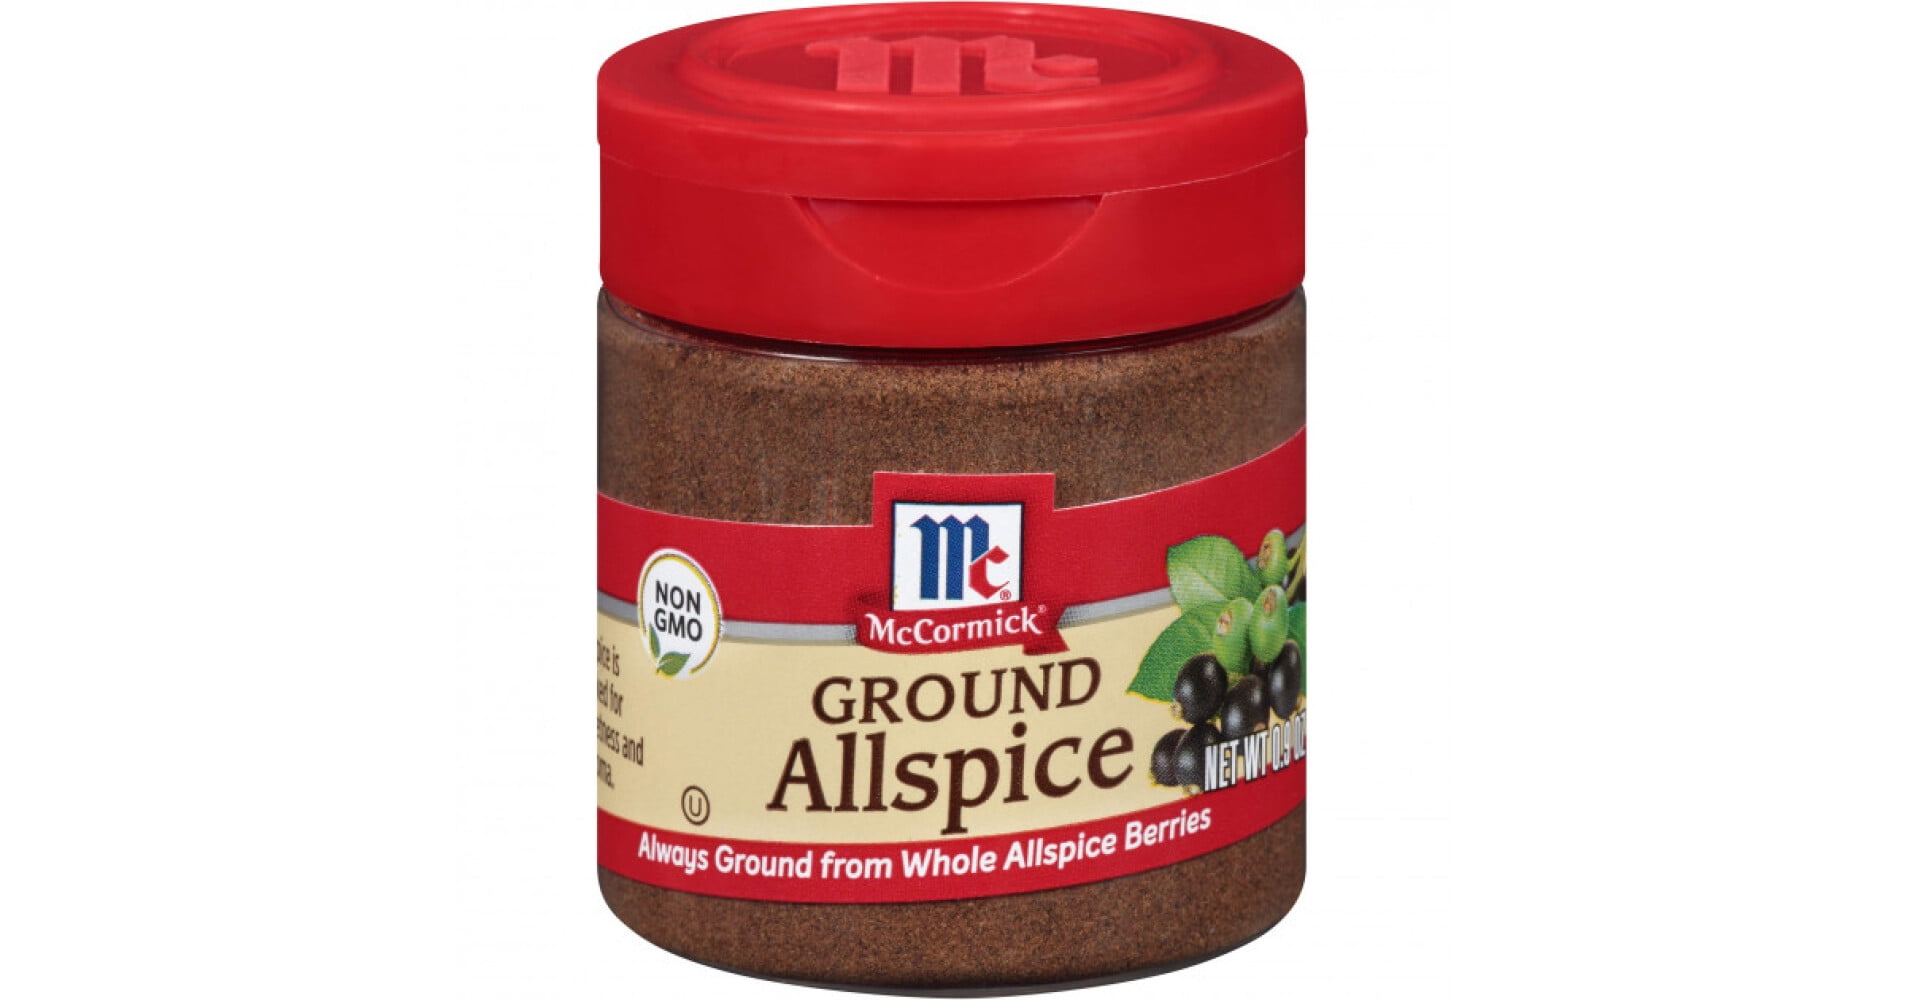 Ground Allspice – Nice saffron